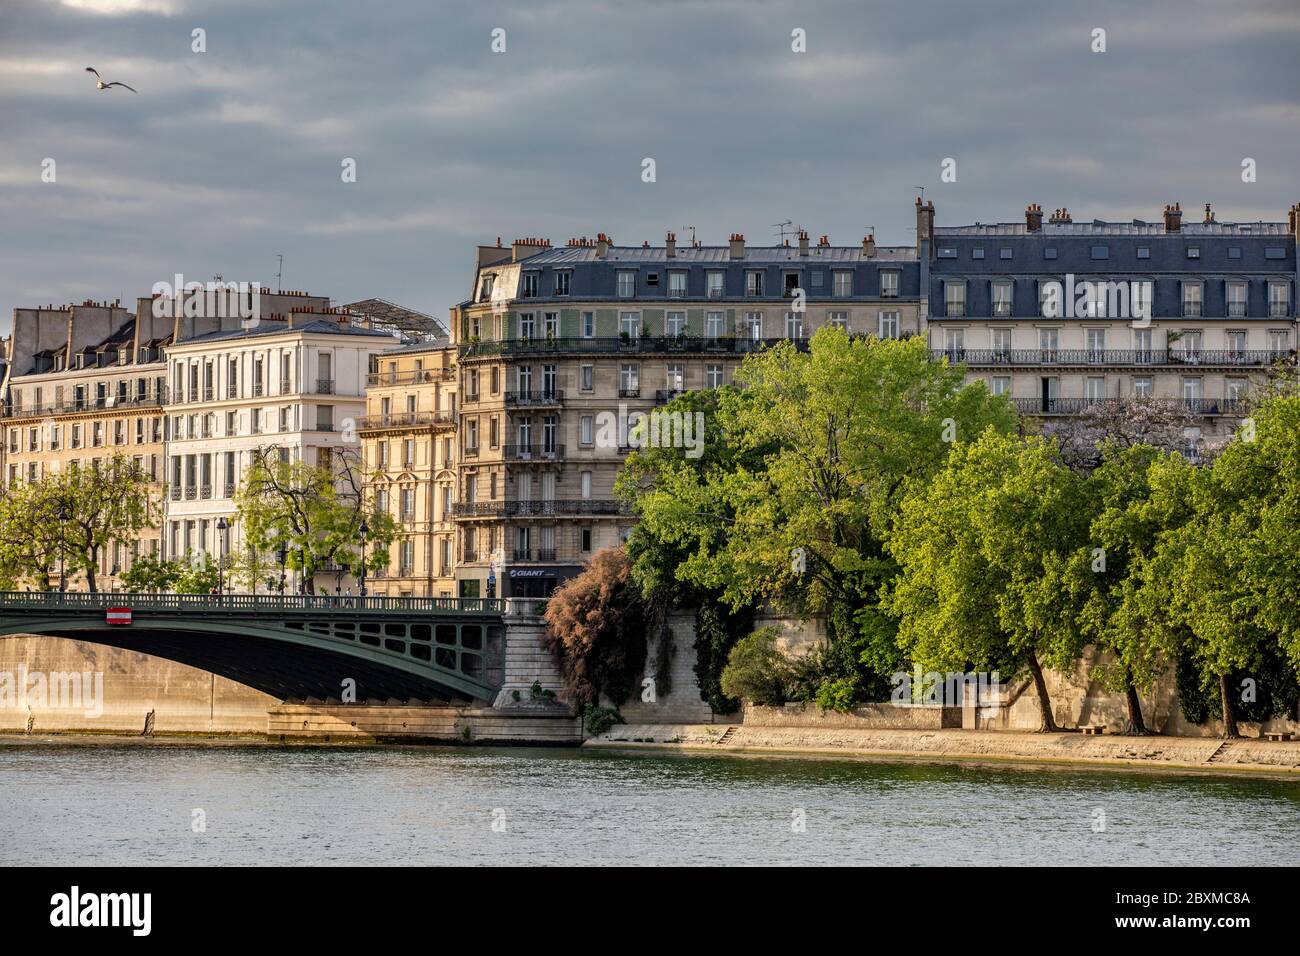 Paris, France - April 25, 2020: Typical Haussmann buildings along the Seine river Stock Photo